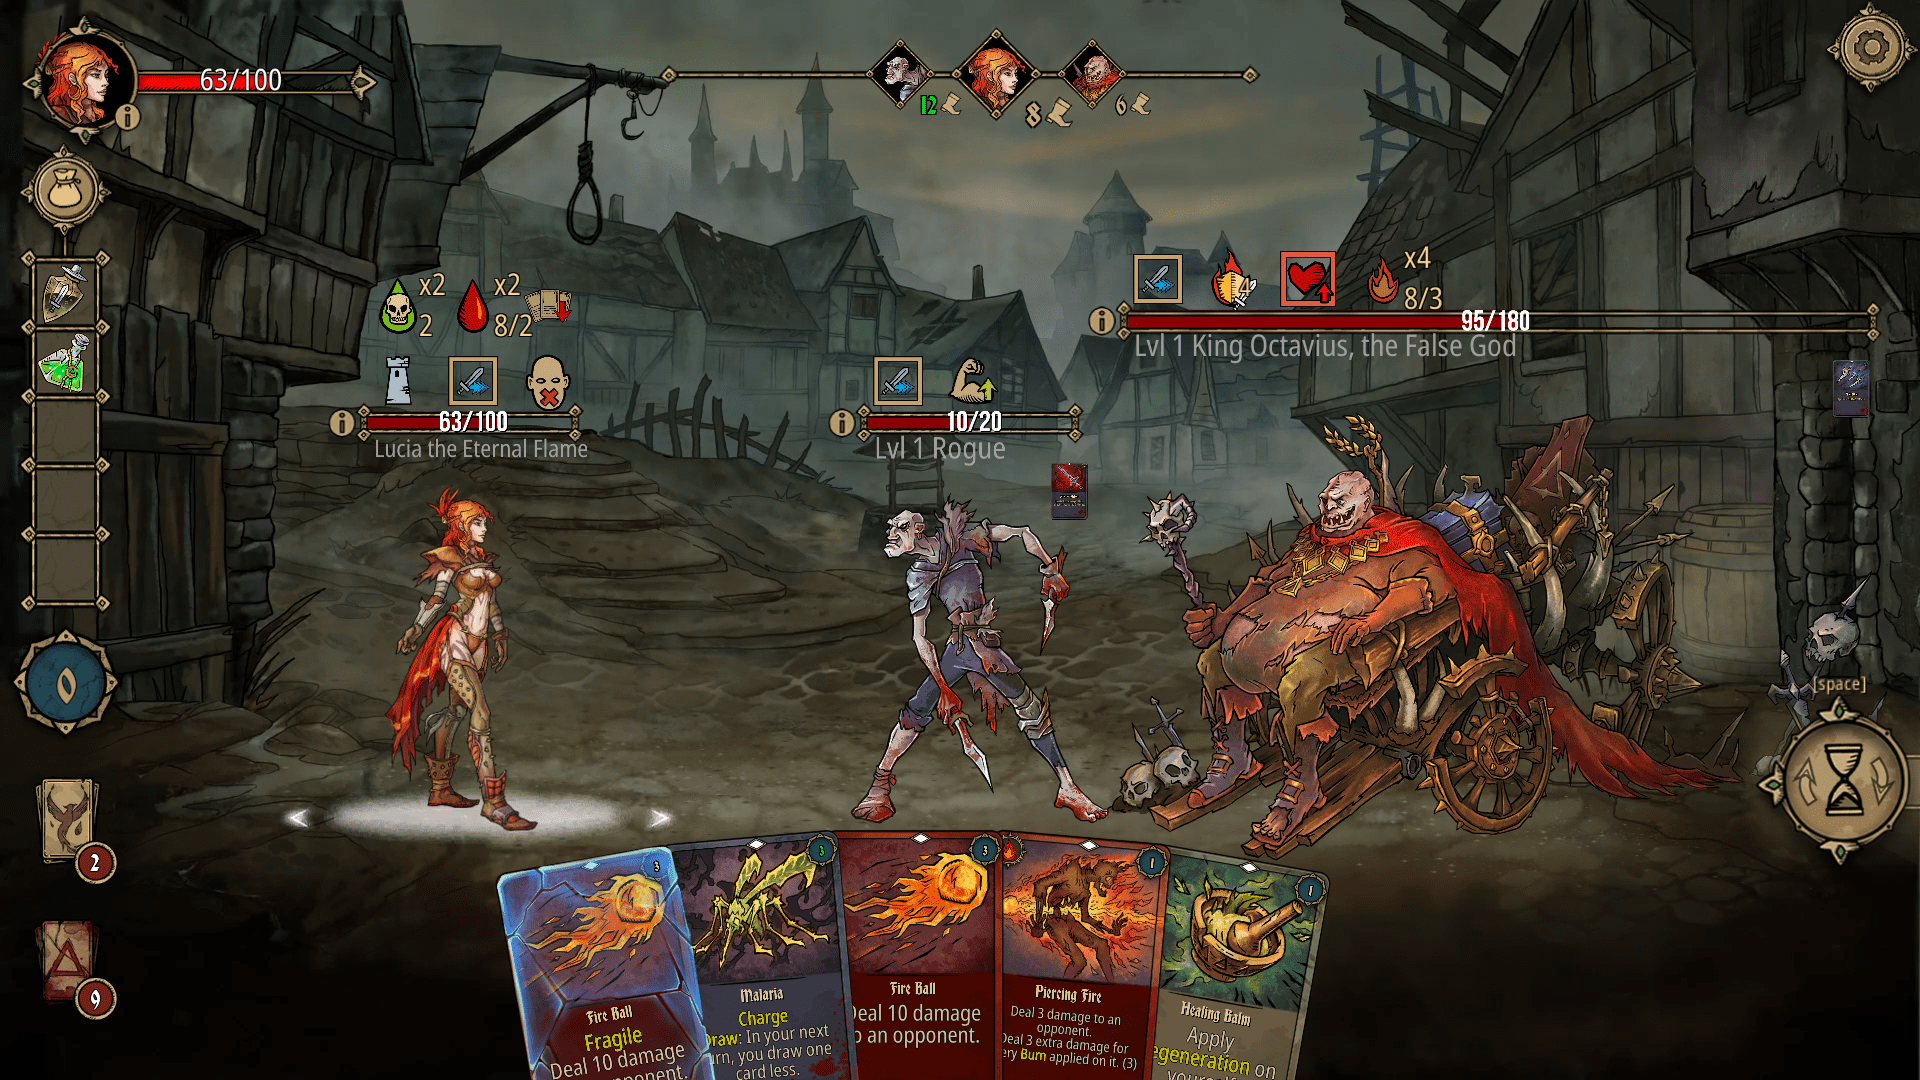 Deck of ashes game screenshot, battling the False God